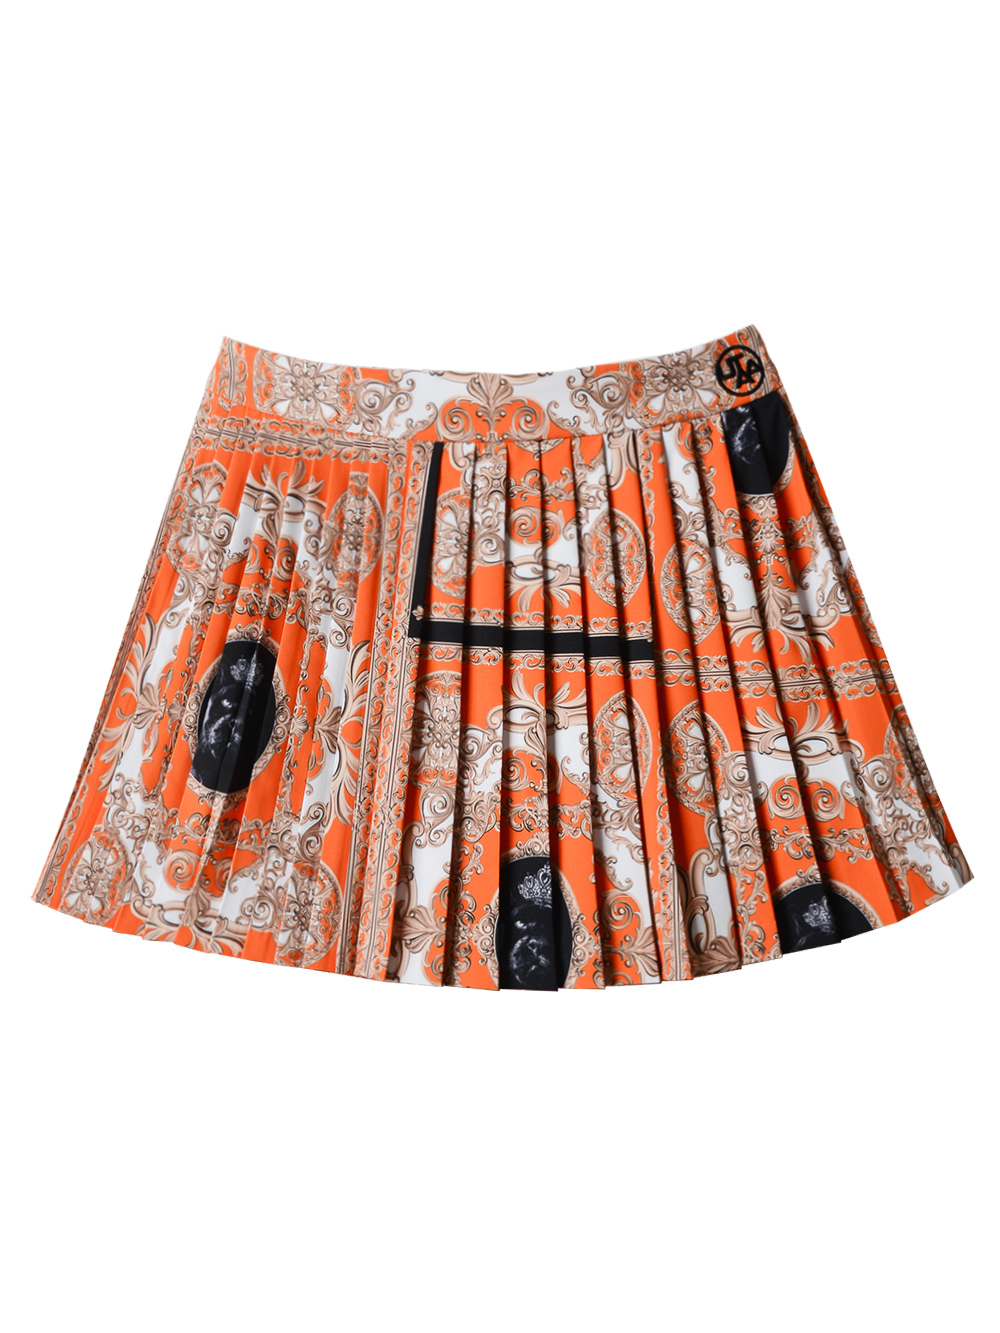 UTAA Canyon Buckingham Skirt : Orange (UC3SKF592OR)